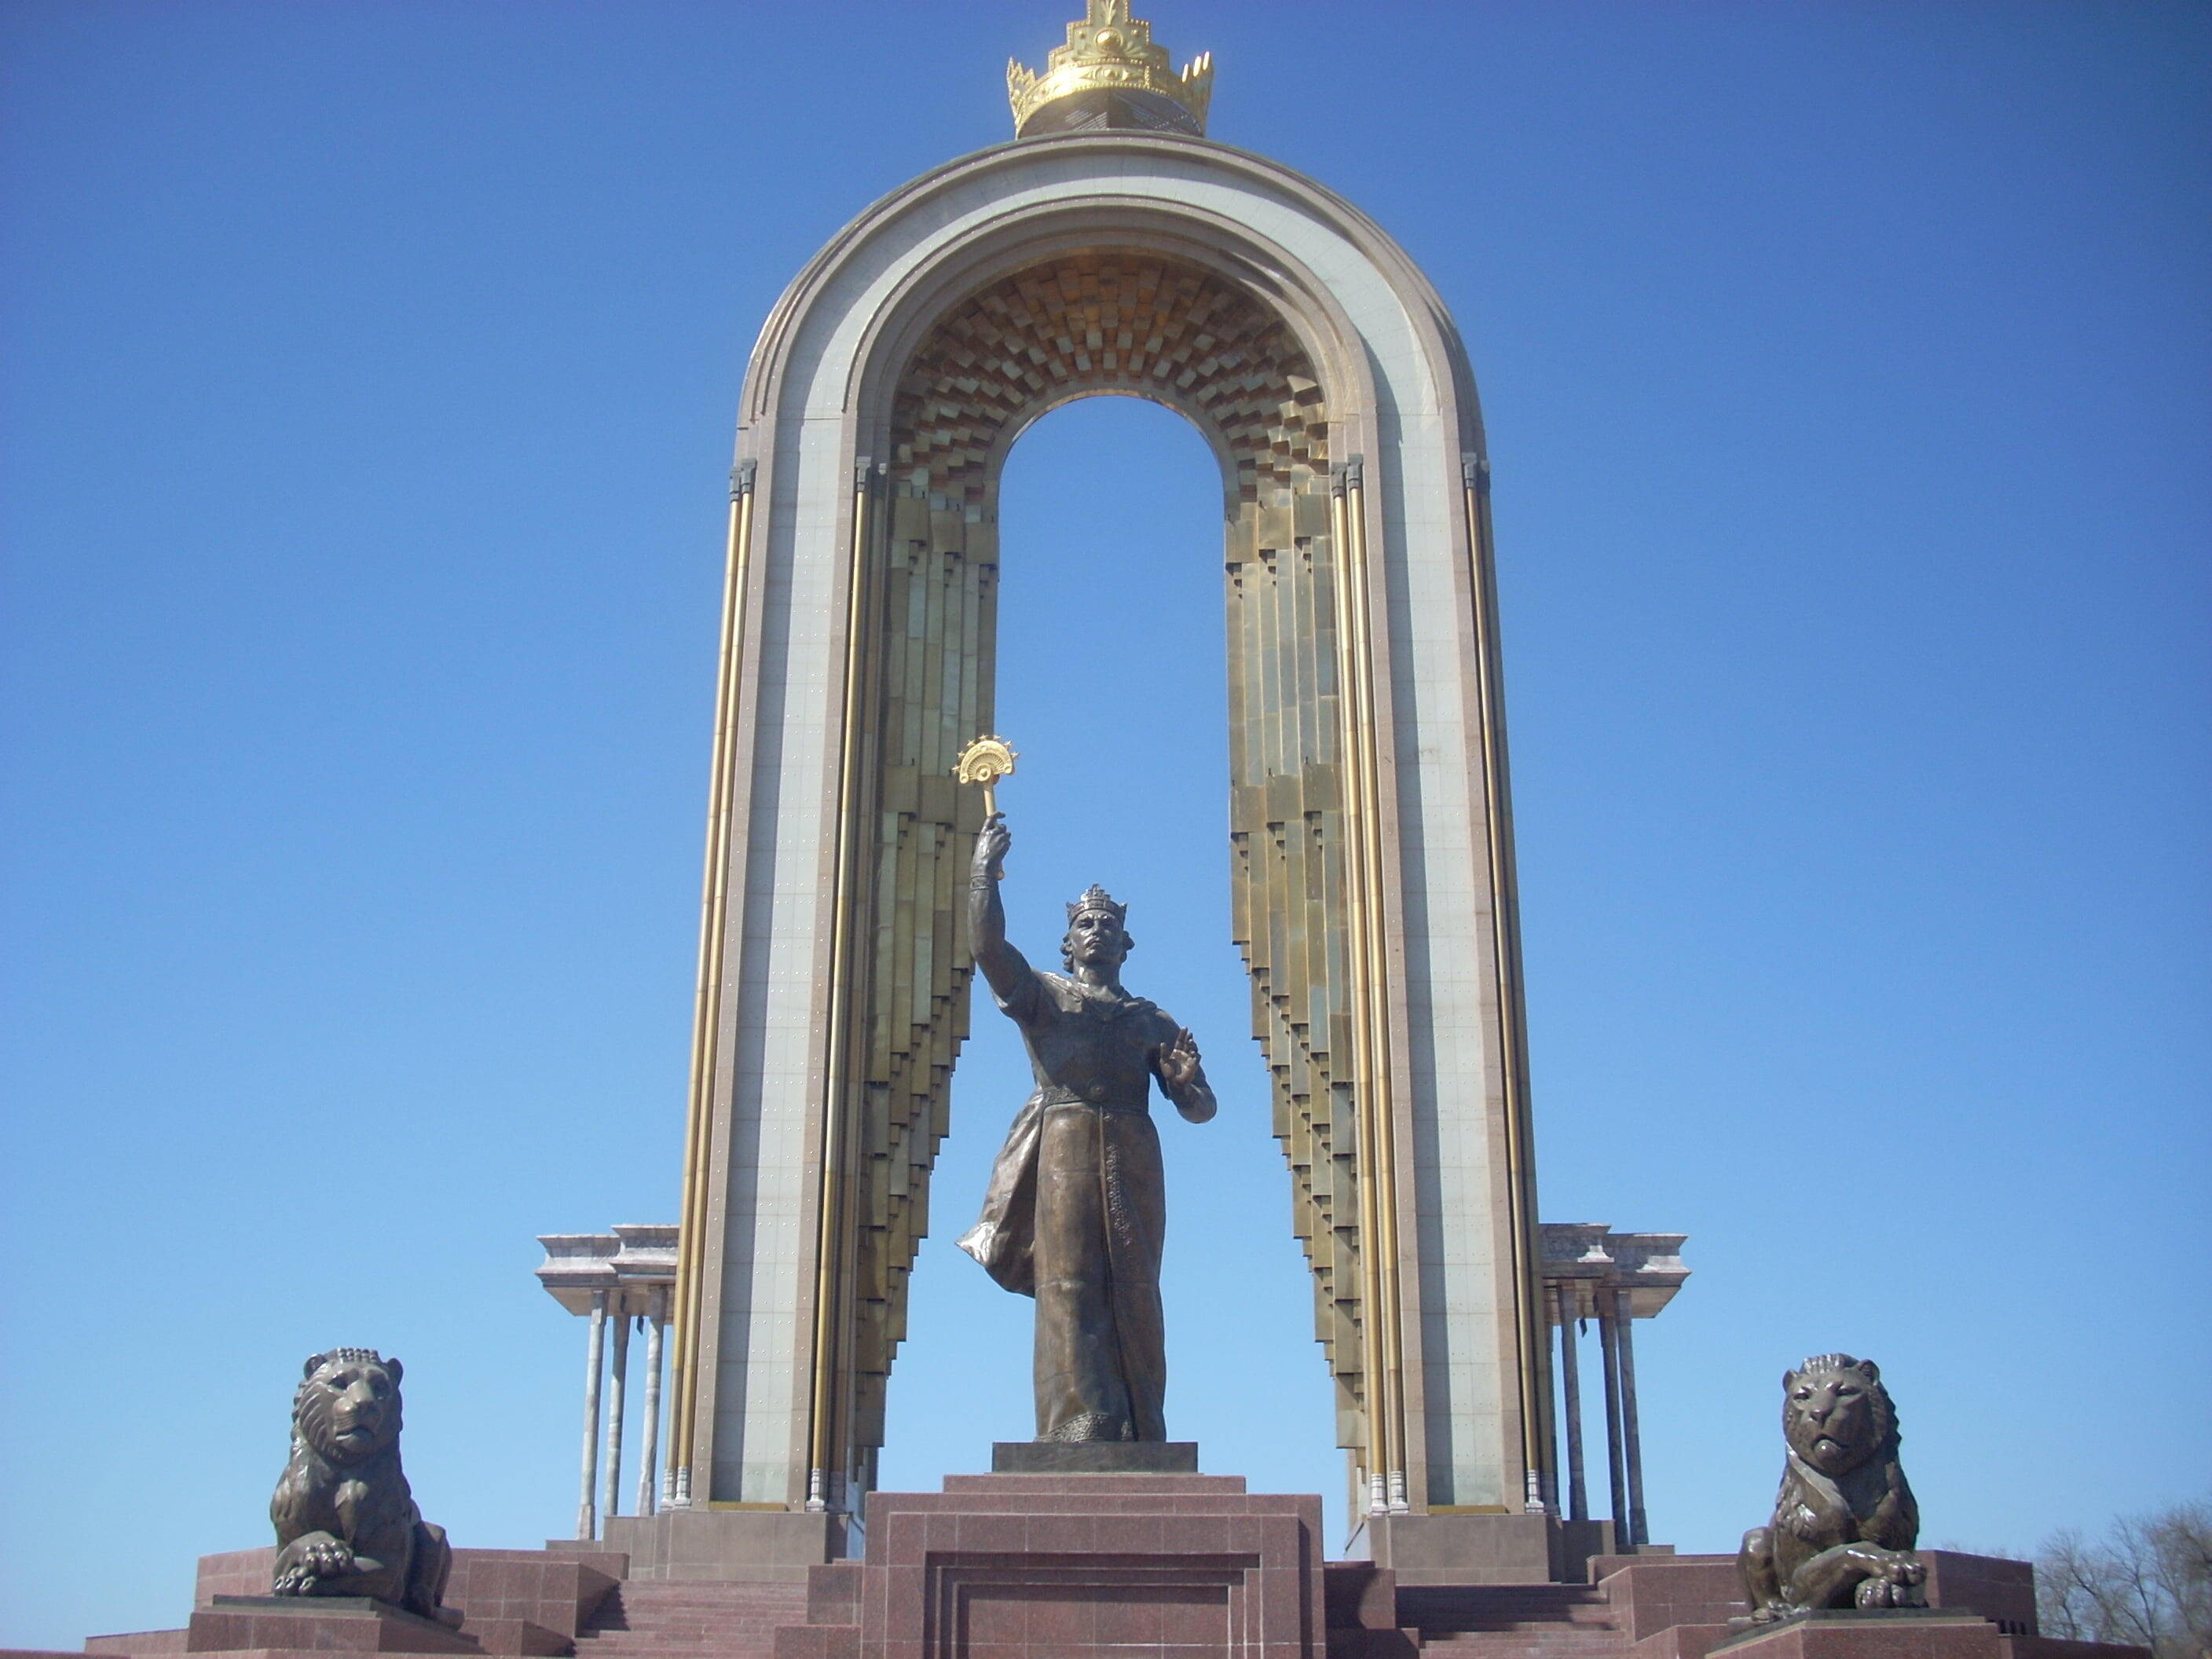 Dušanbe - Ismail Somoni monument in Dushanbe